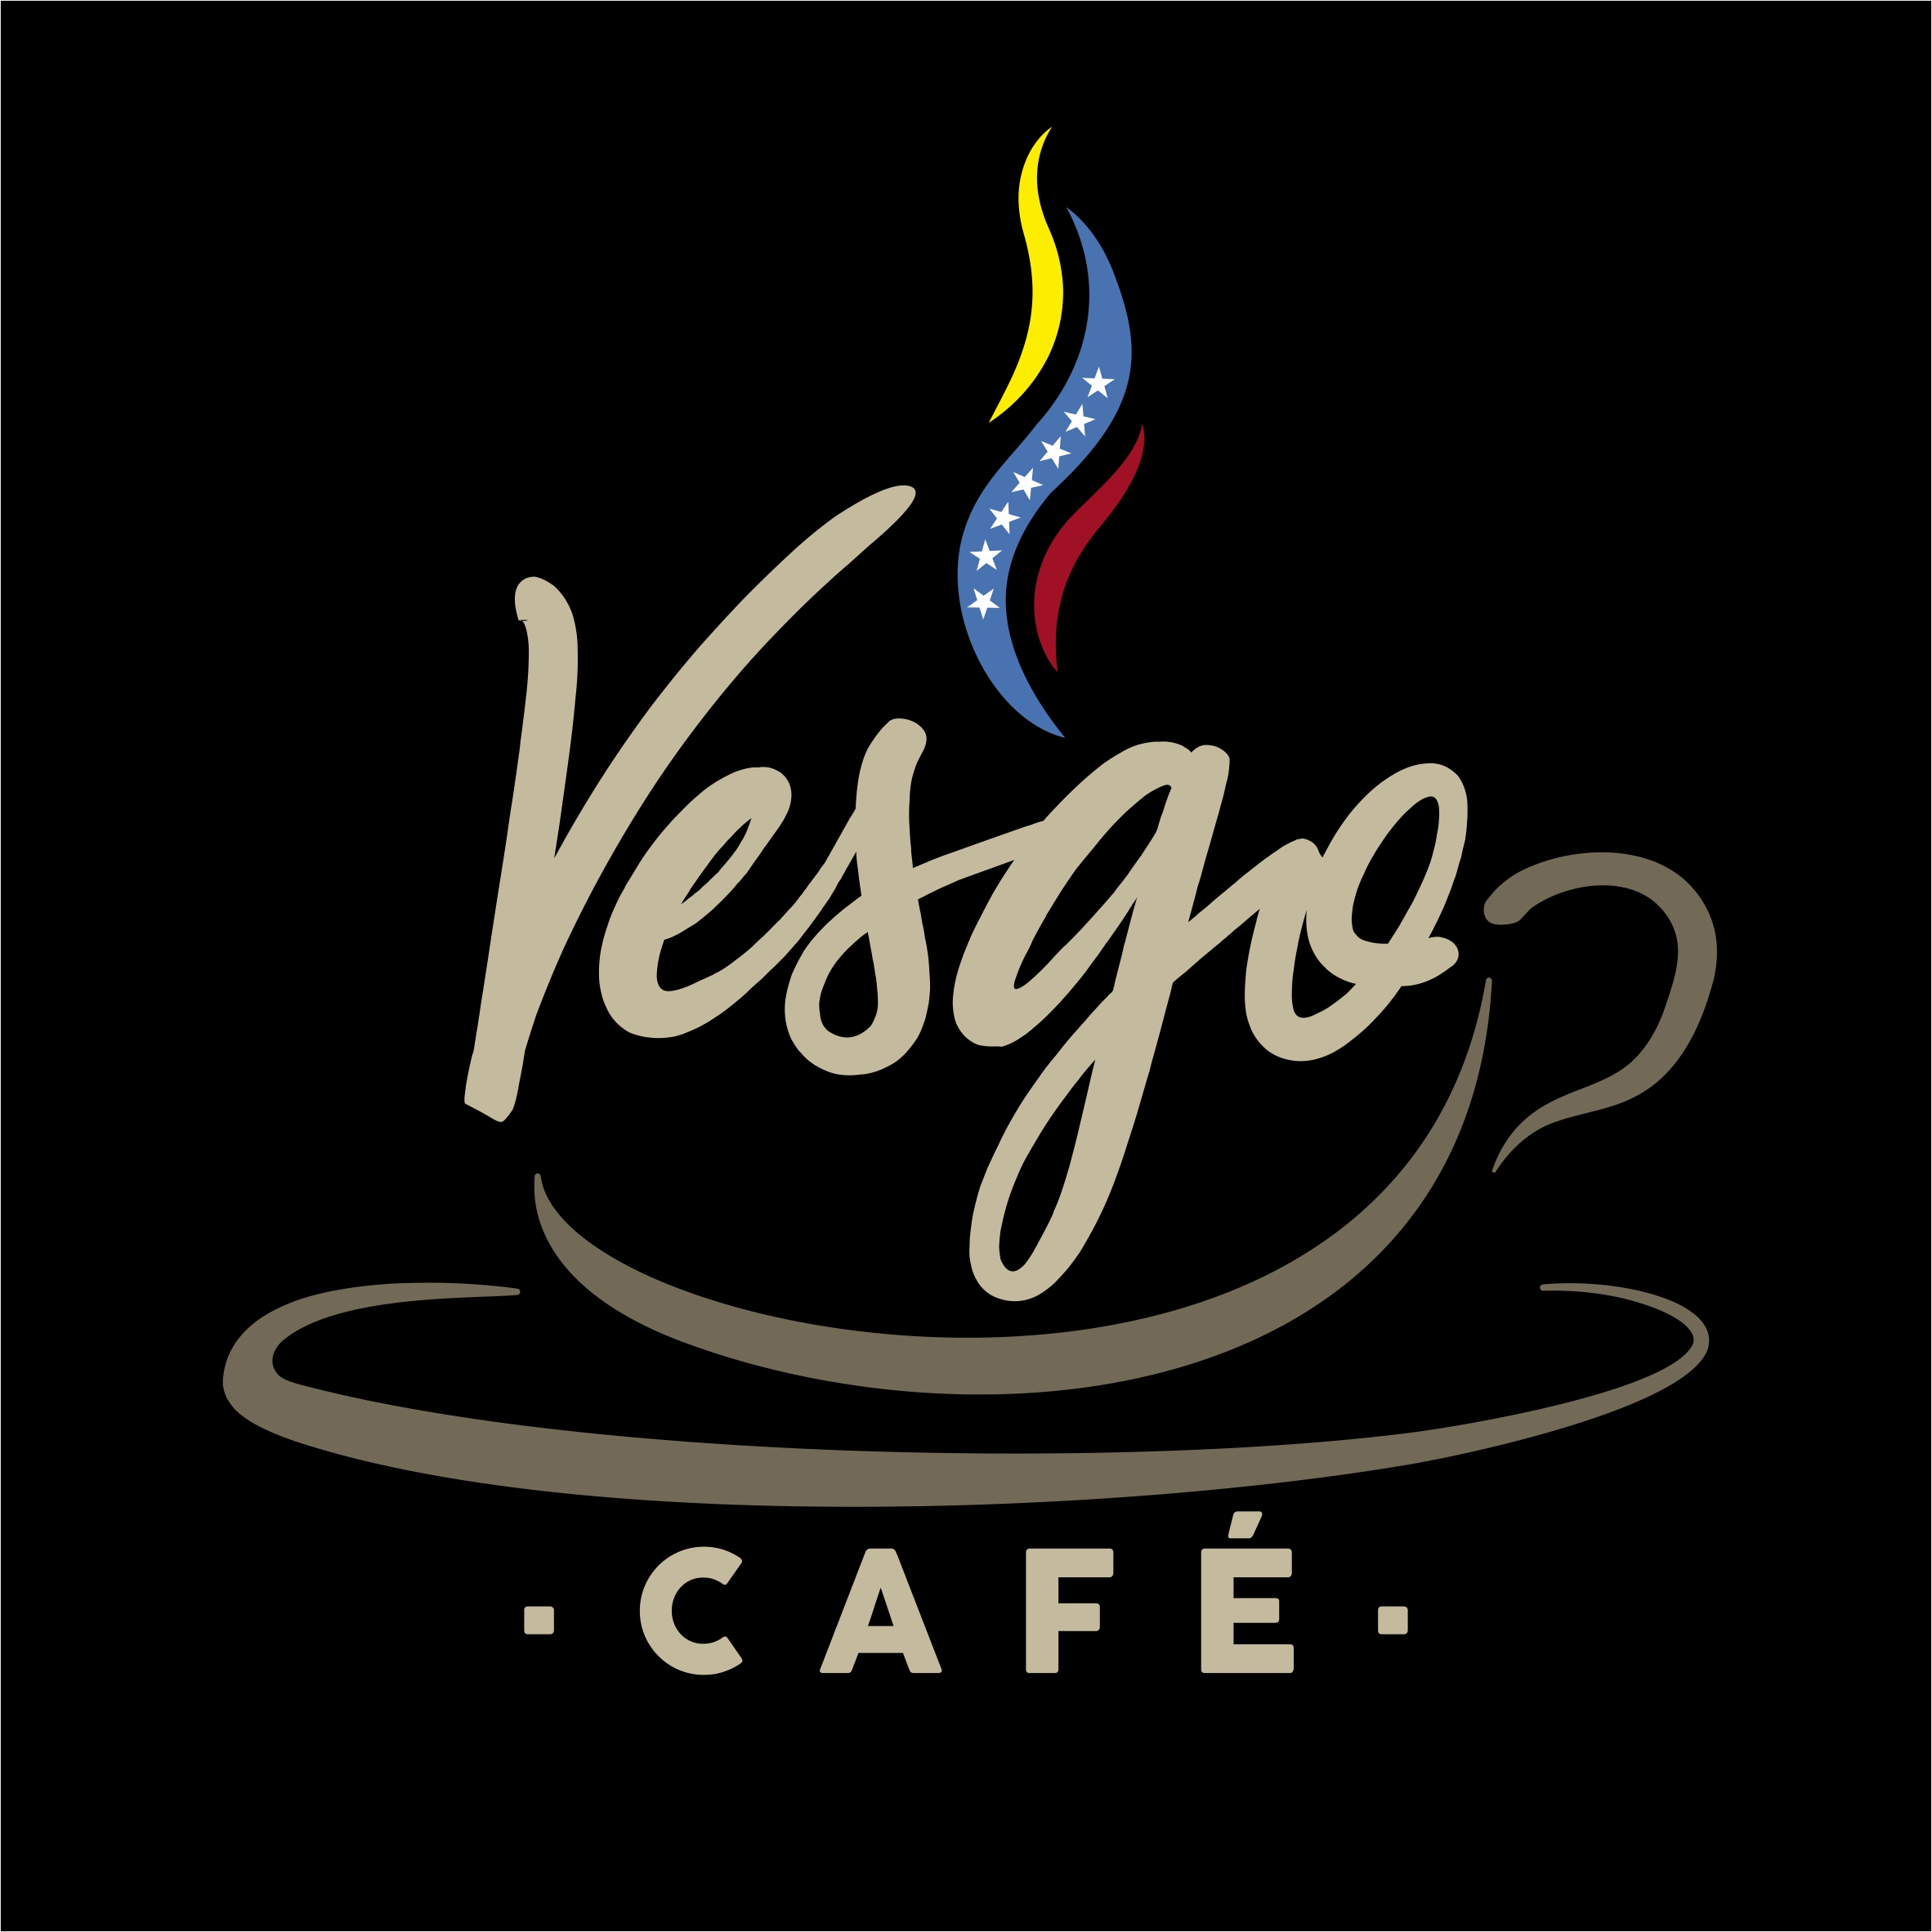 Vesgo Café